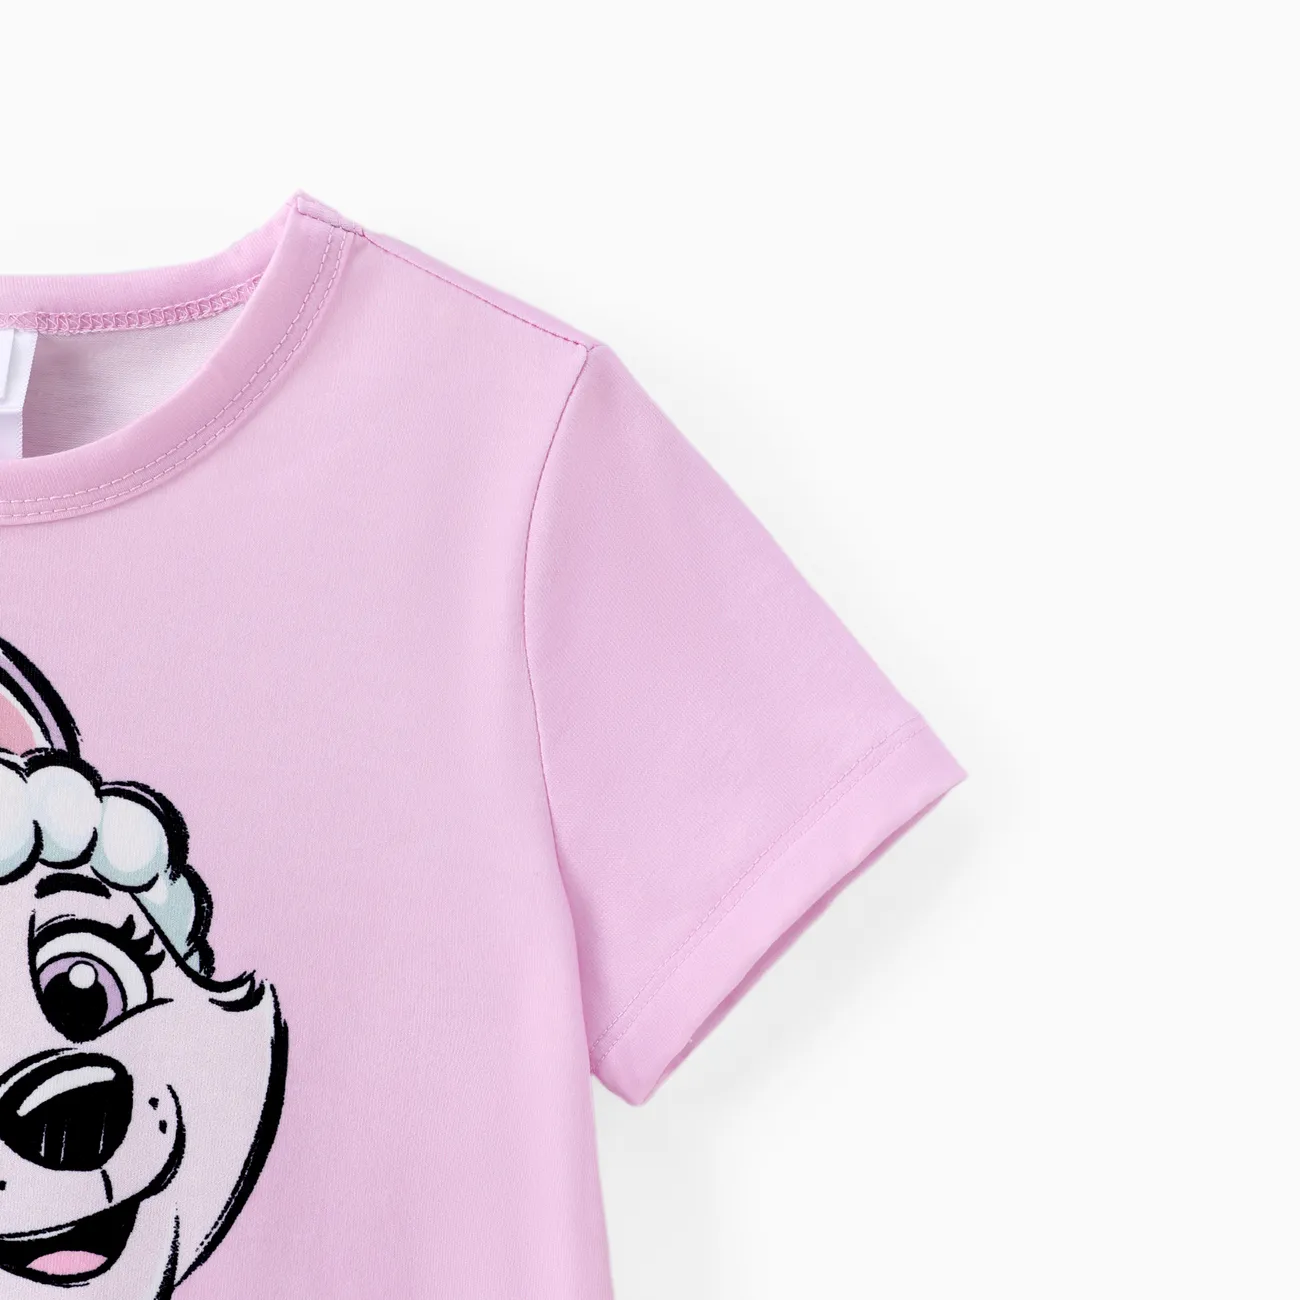 Patrulla de cachorros Unisex Infantil Camiseta Violeta claro big image 1